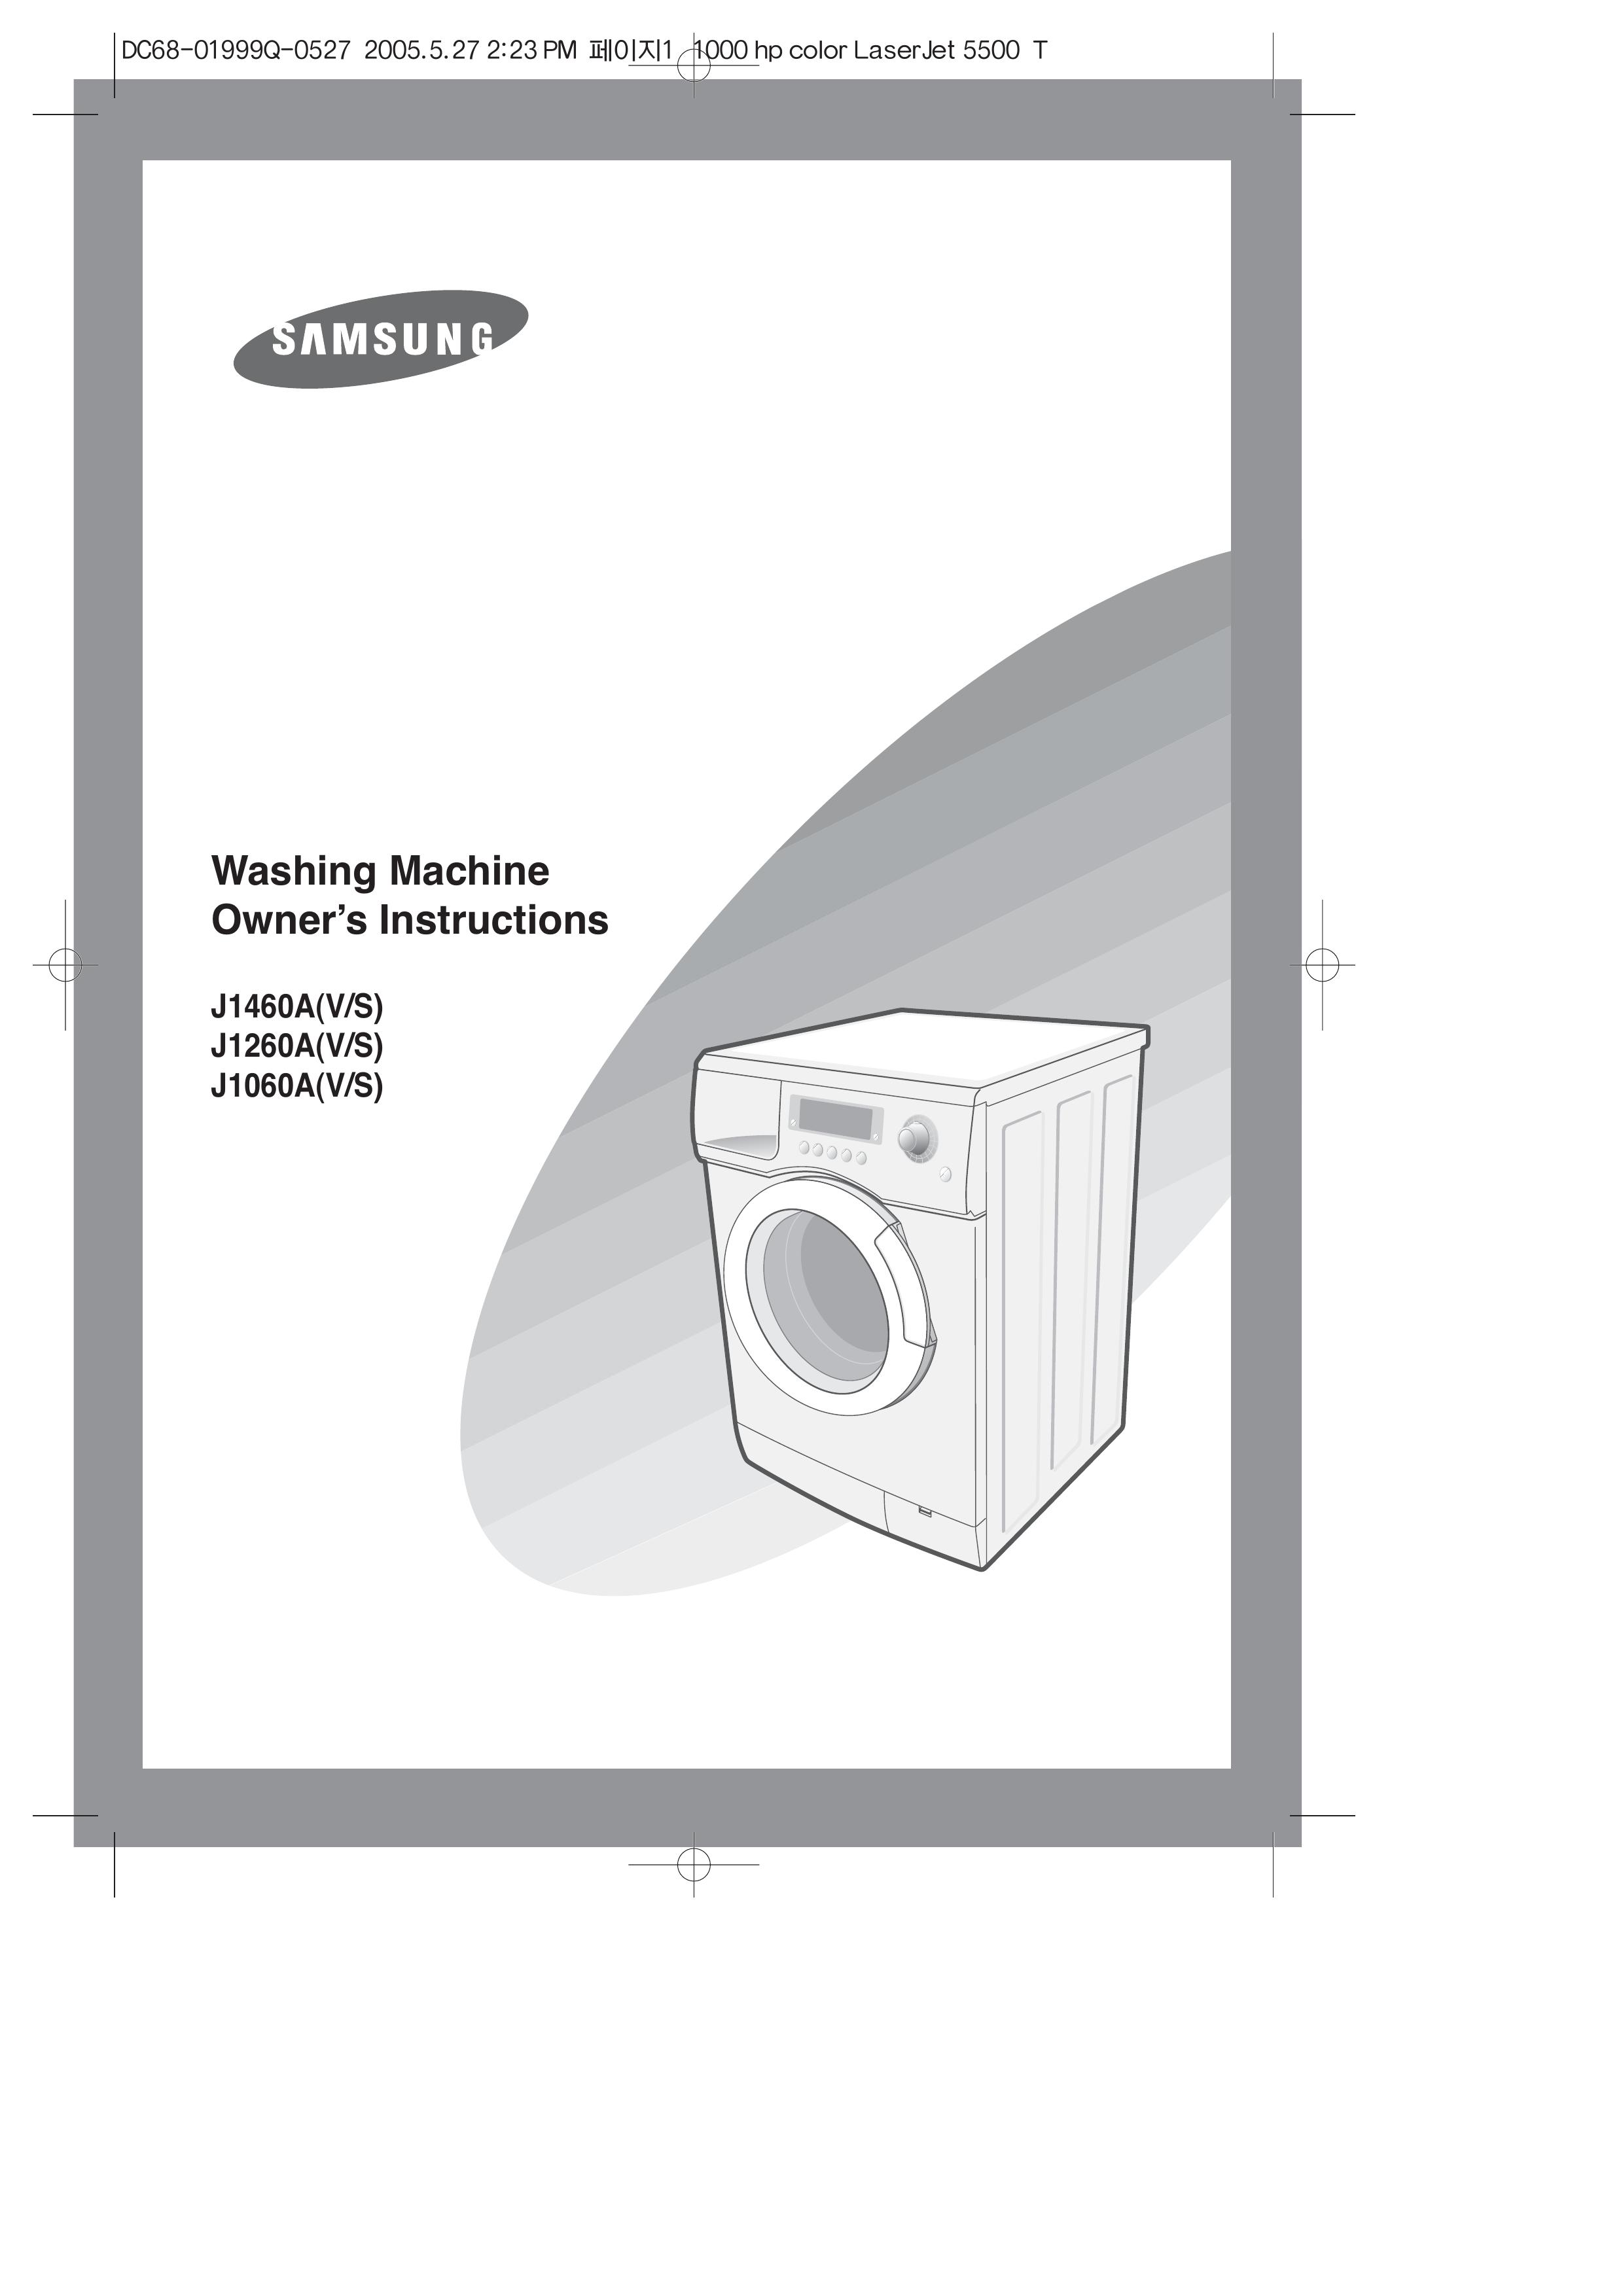 Samsung J1260A(V/S) Washer/Dryer User Manual